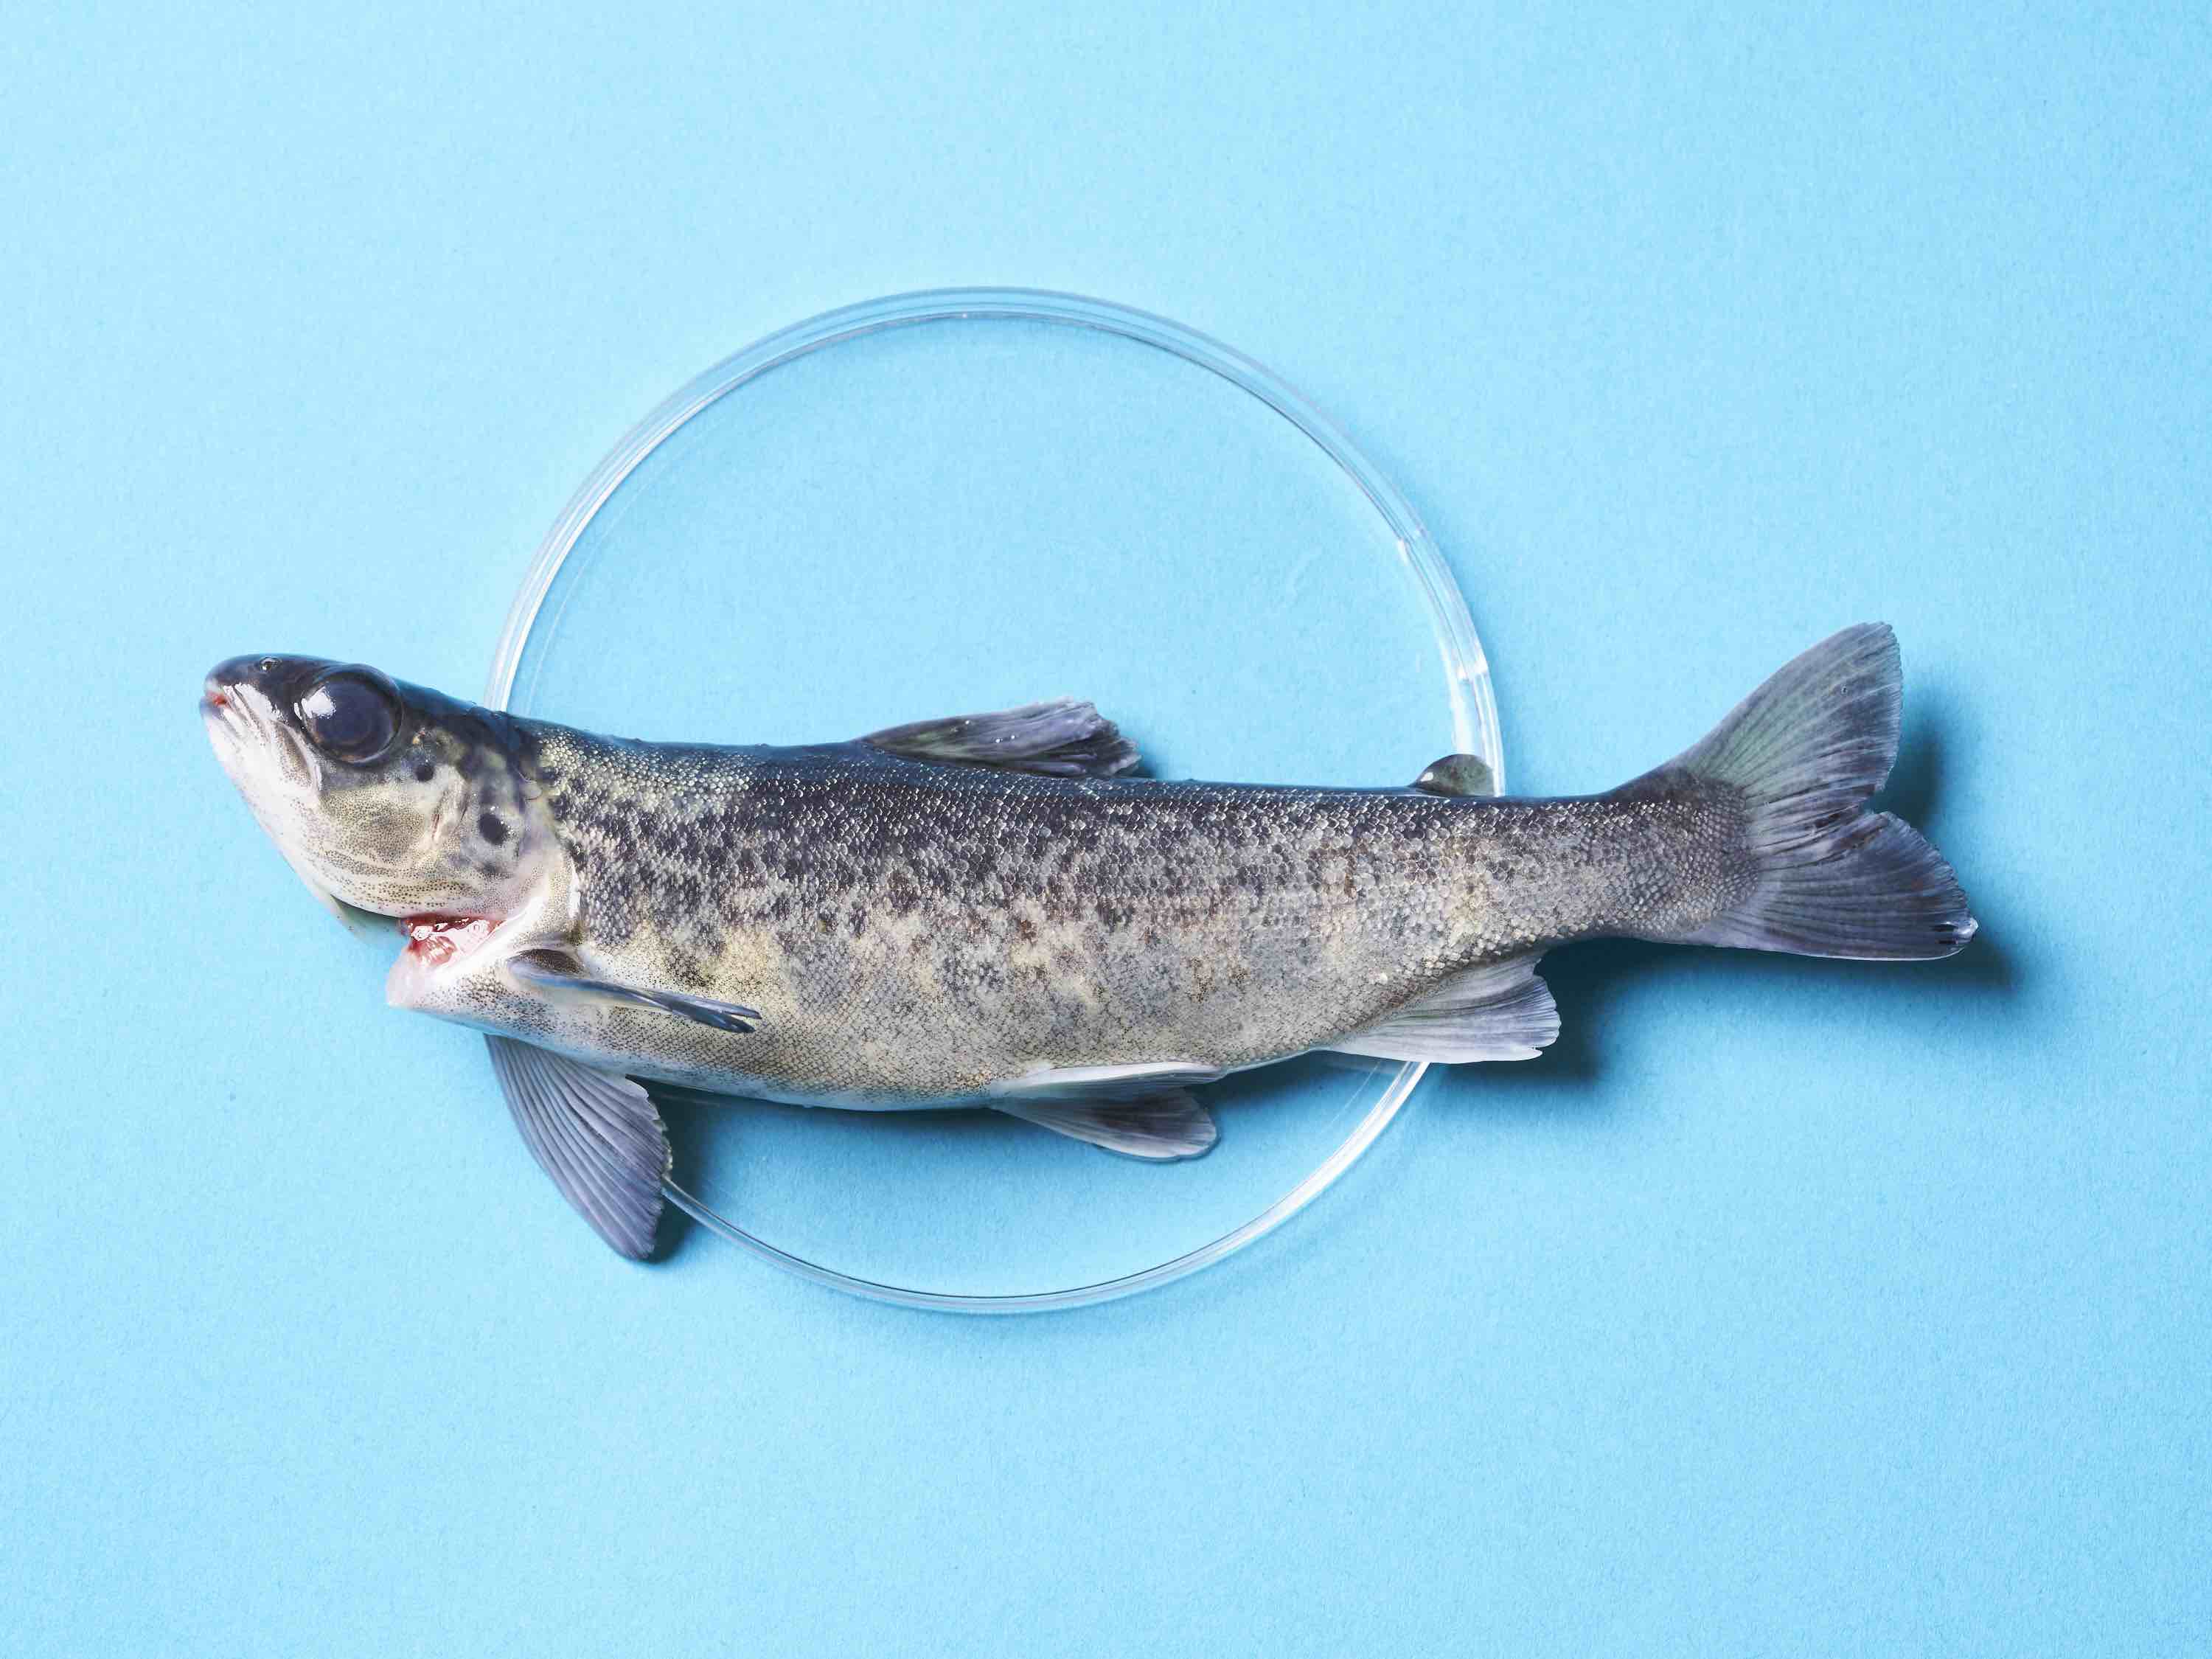 An Atlantic salmon in Petri dish